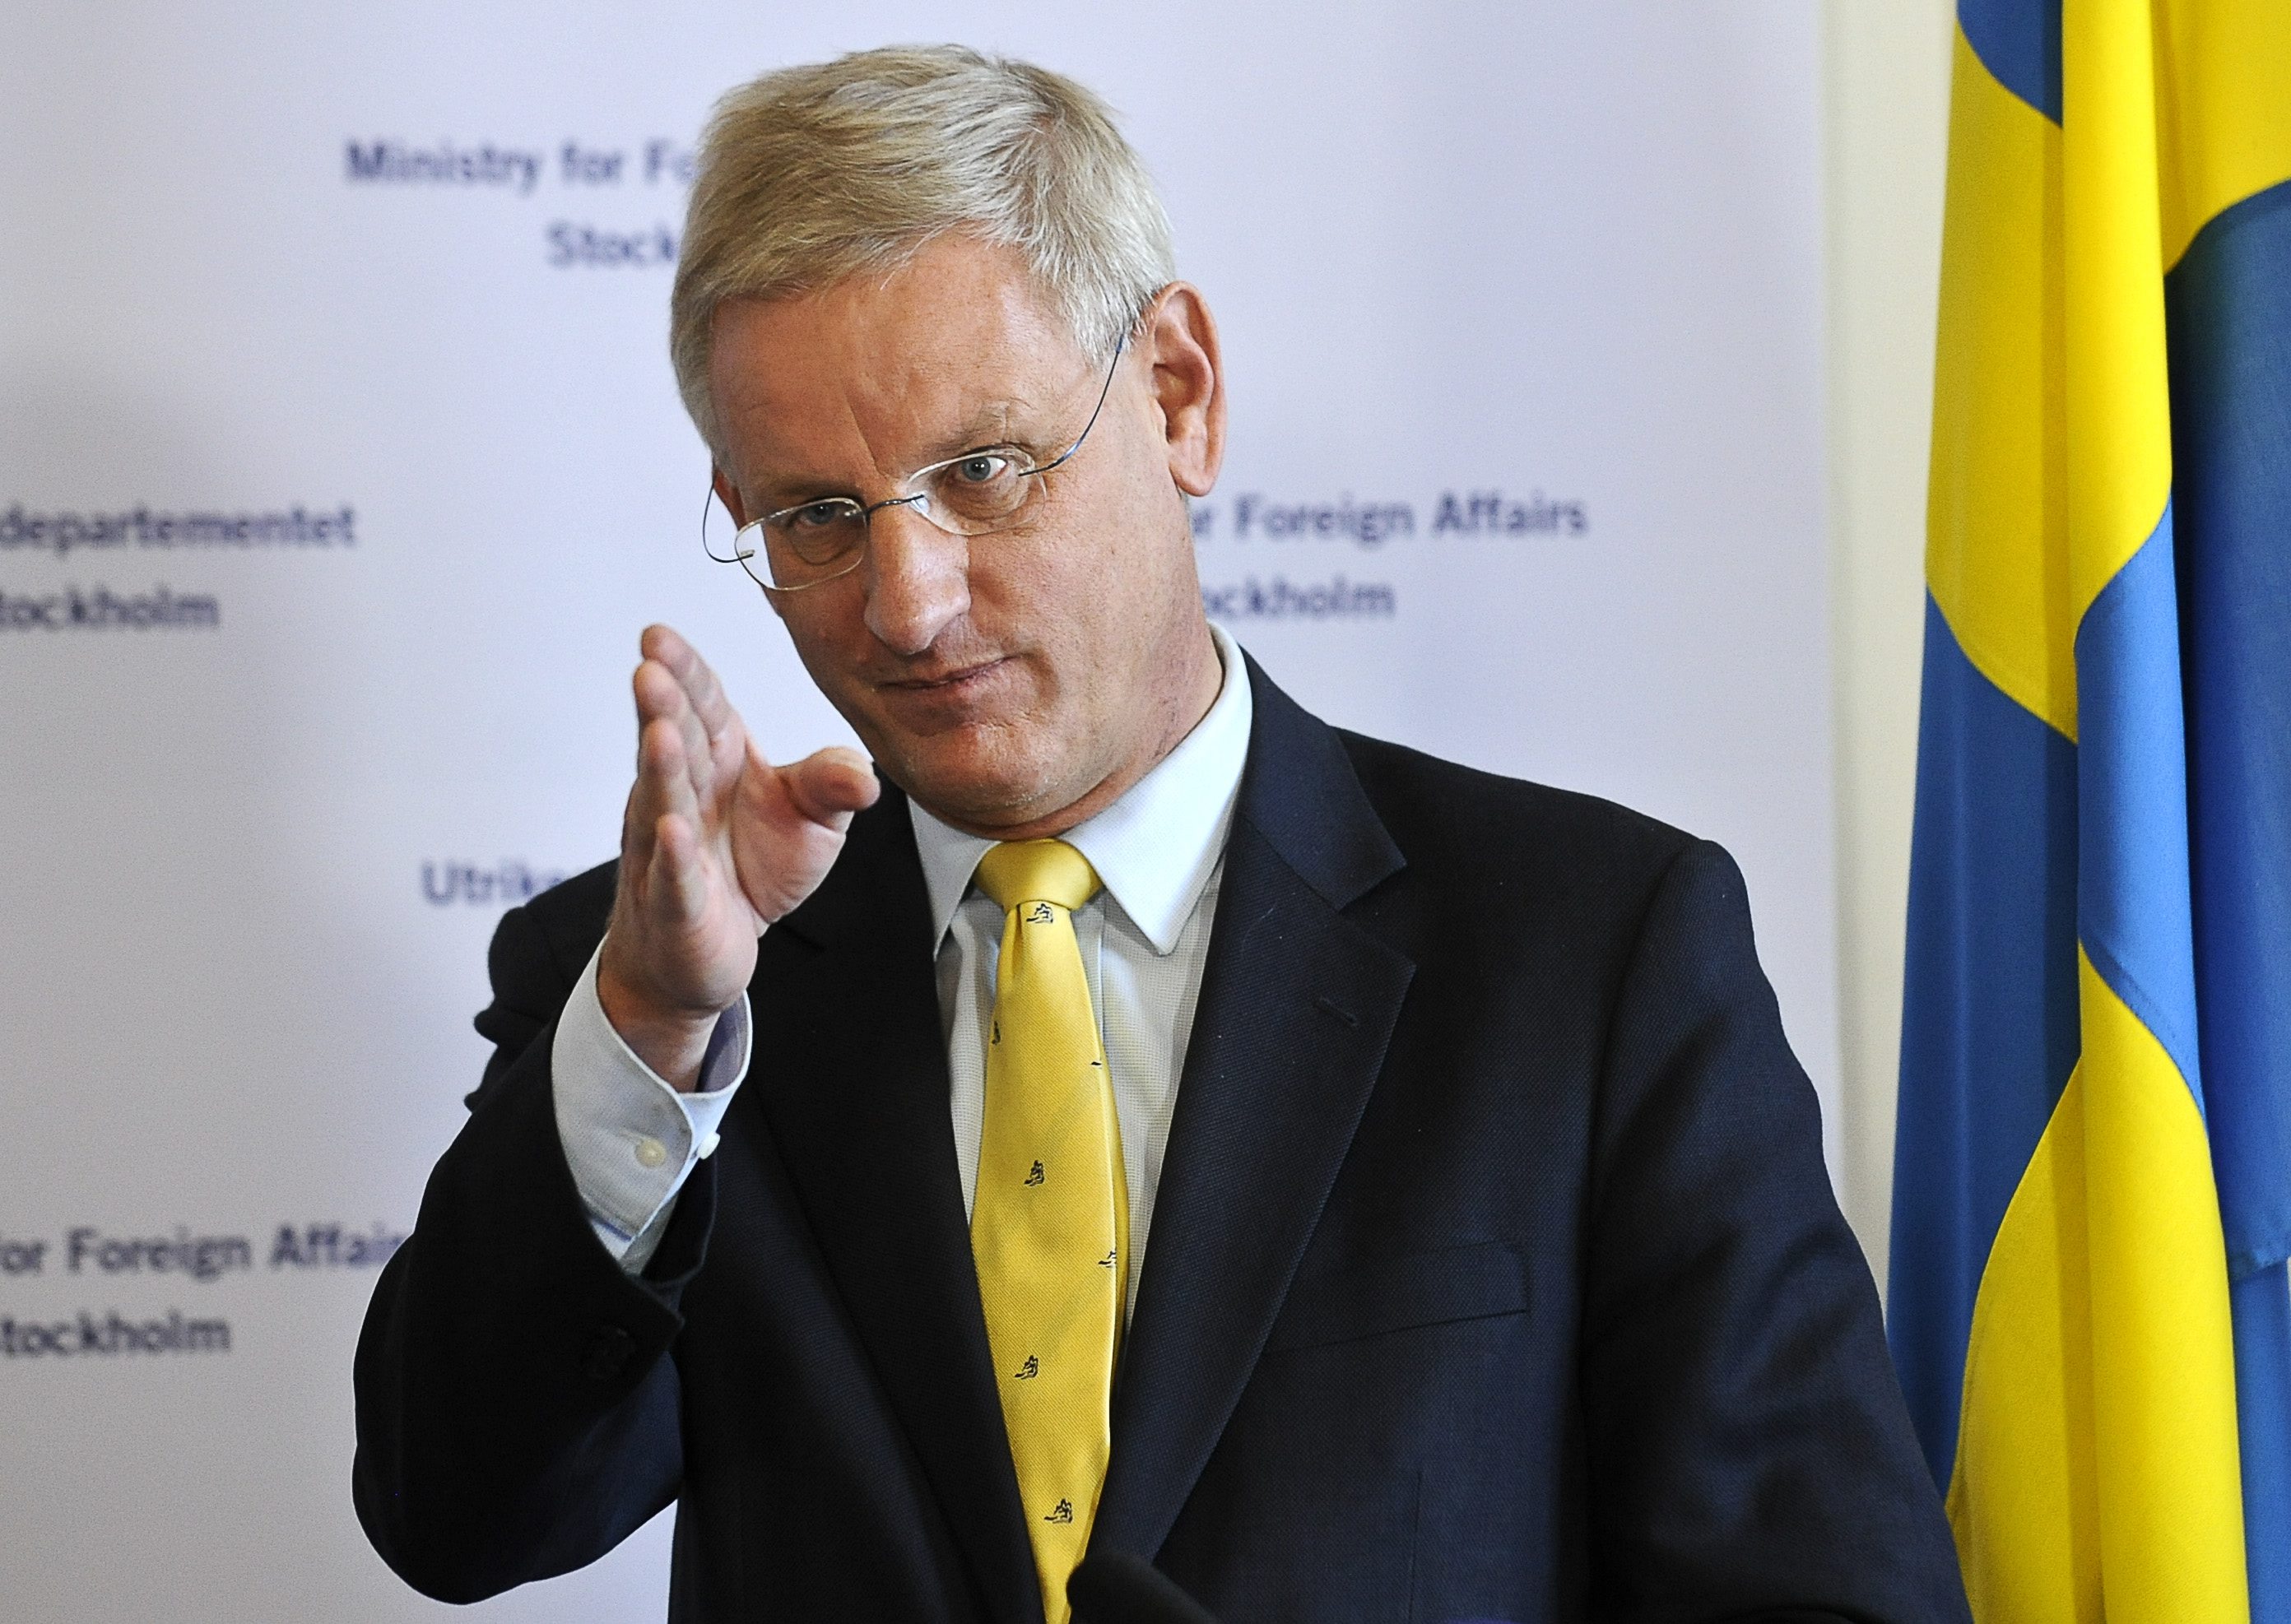 Utrikesminister Carl Bildt hävdar att han träffar Saudiarabaiens prins Turki regelbundet och vill vårda relationerna med landet.